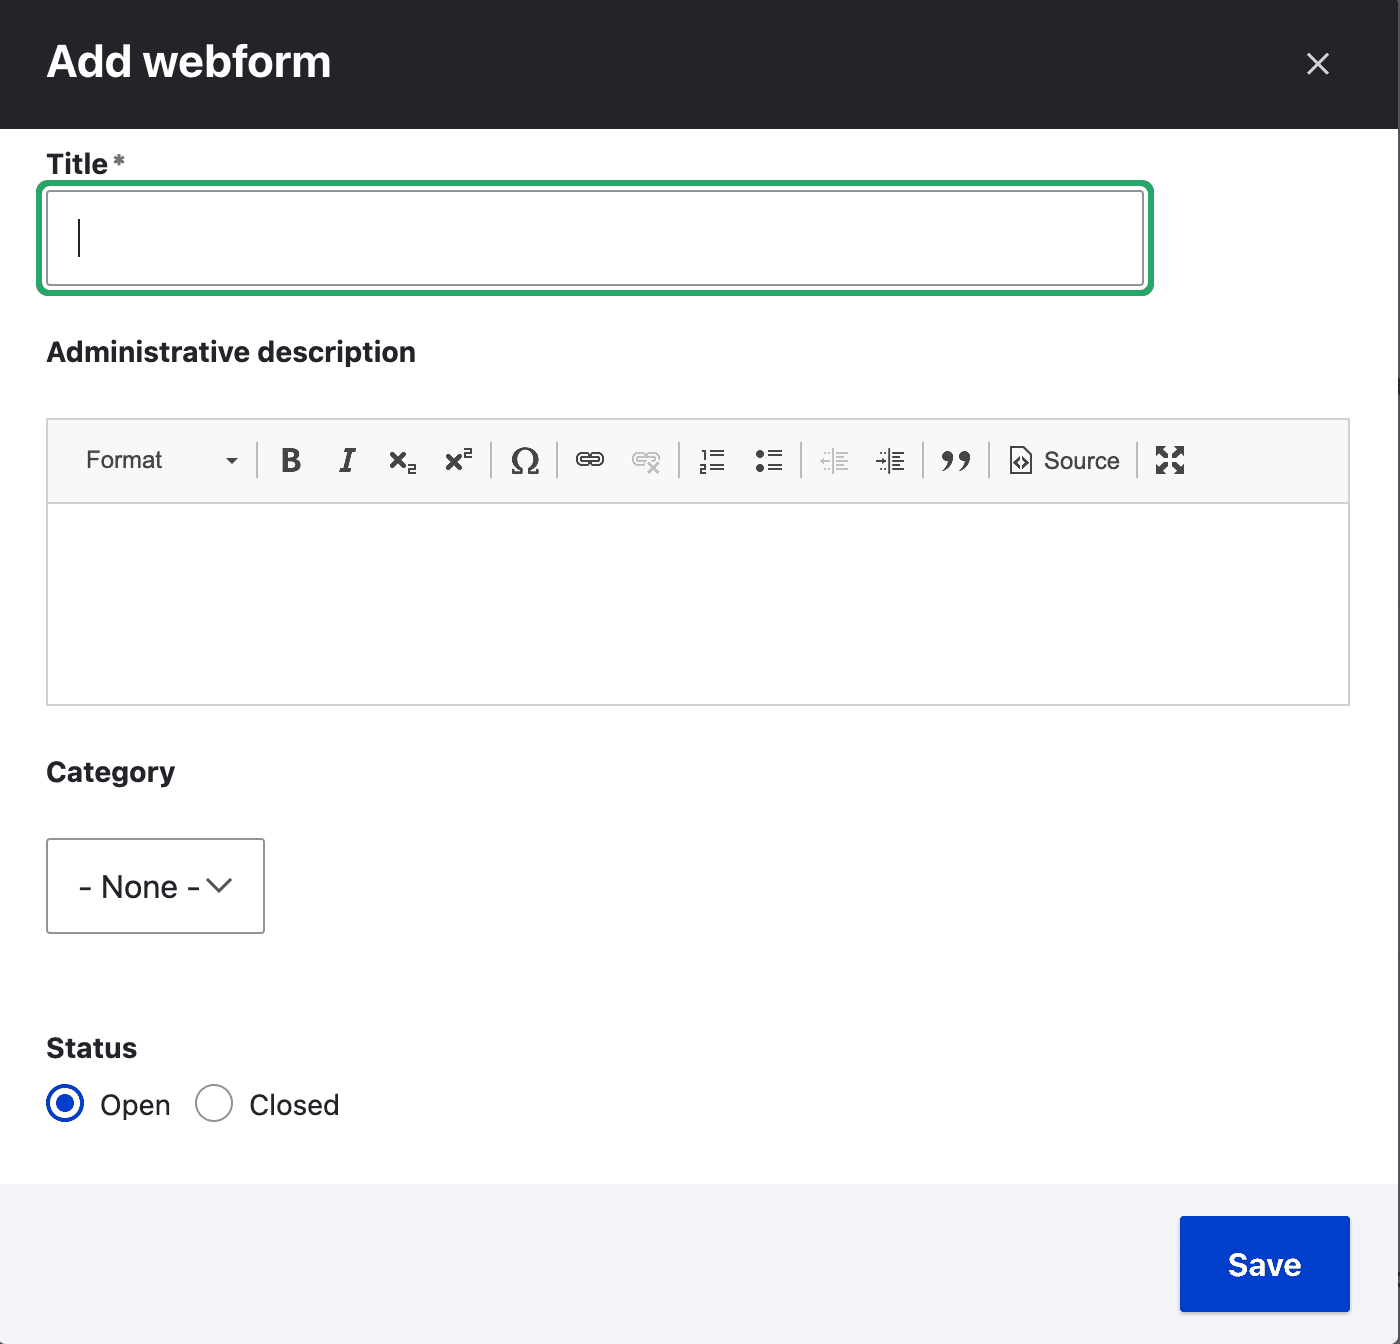 Adding Webform